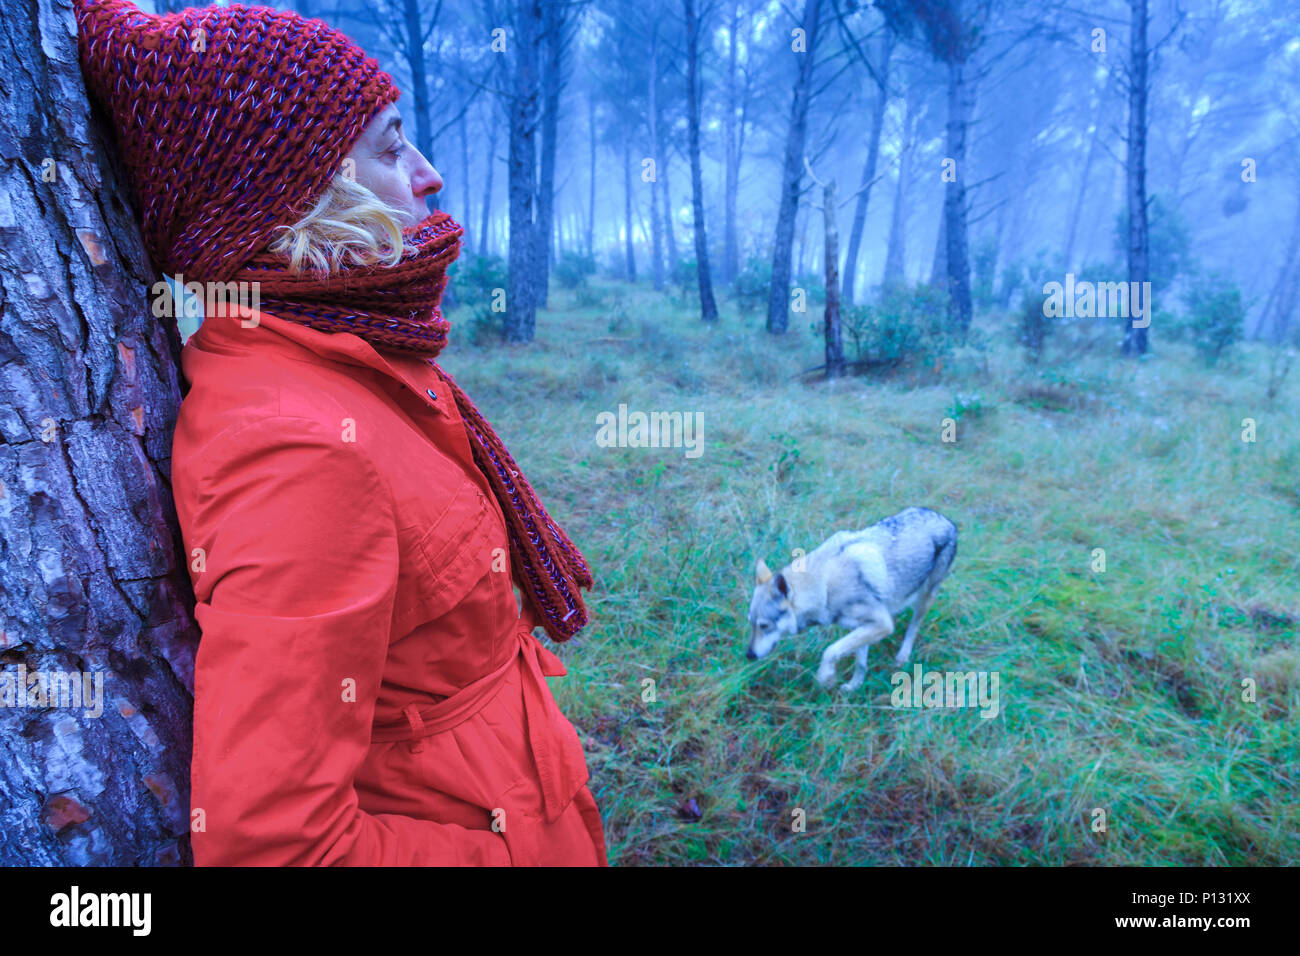 La donna in un boschetto di pini con un cane lupo. Tierra Estella County, Navarra, Spagna, Europa. Foto Stock